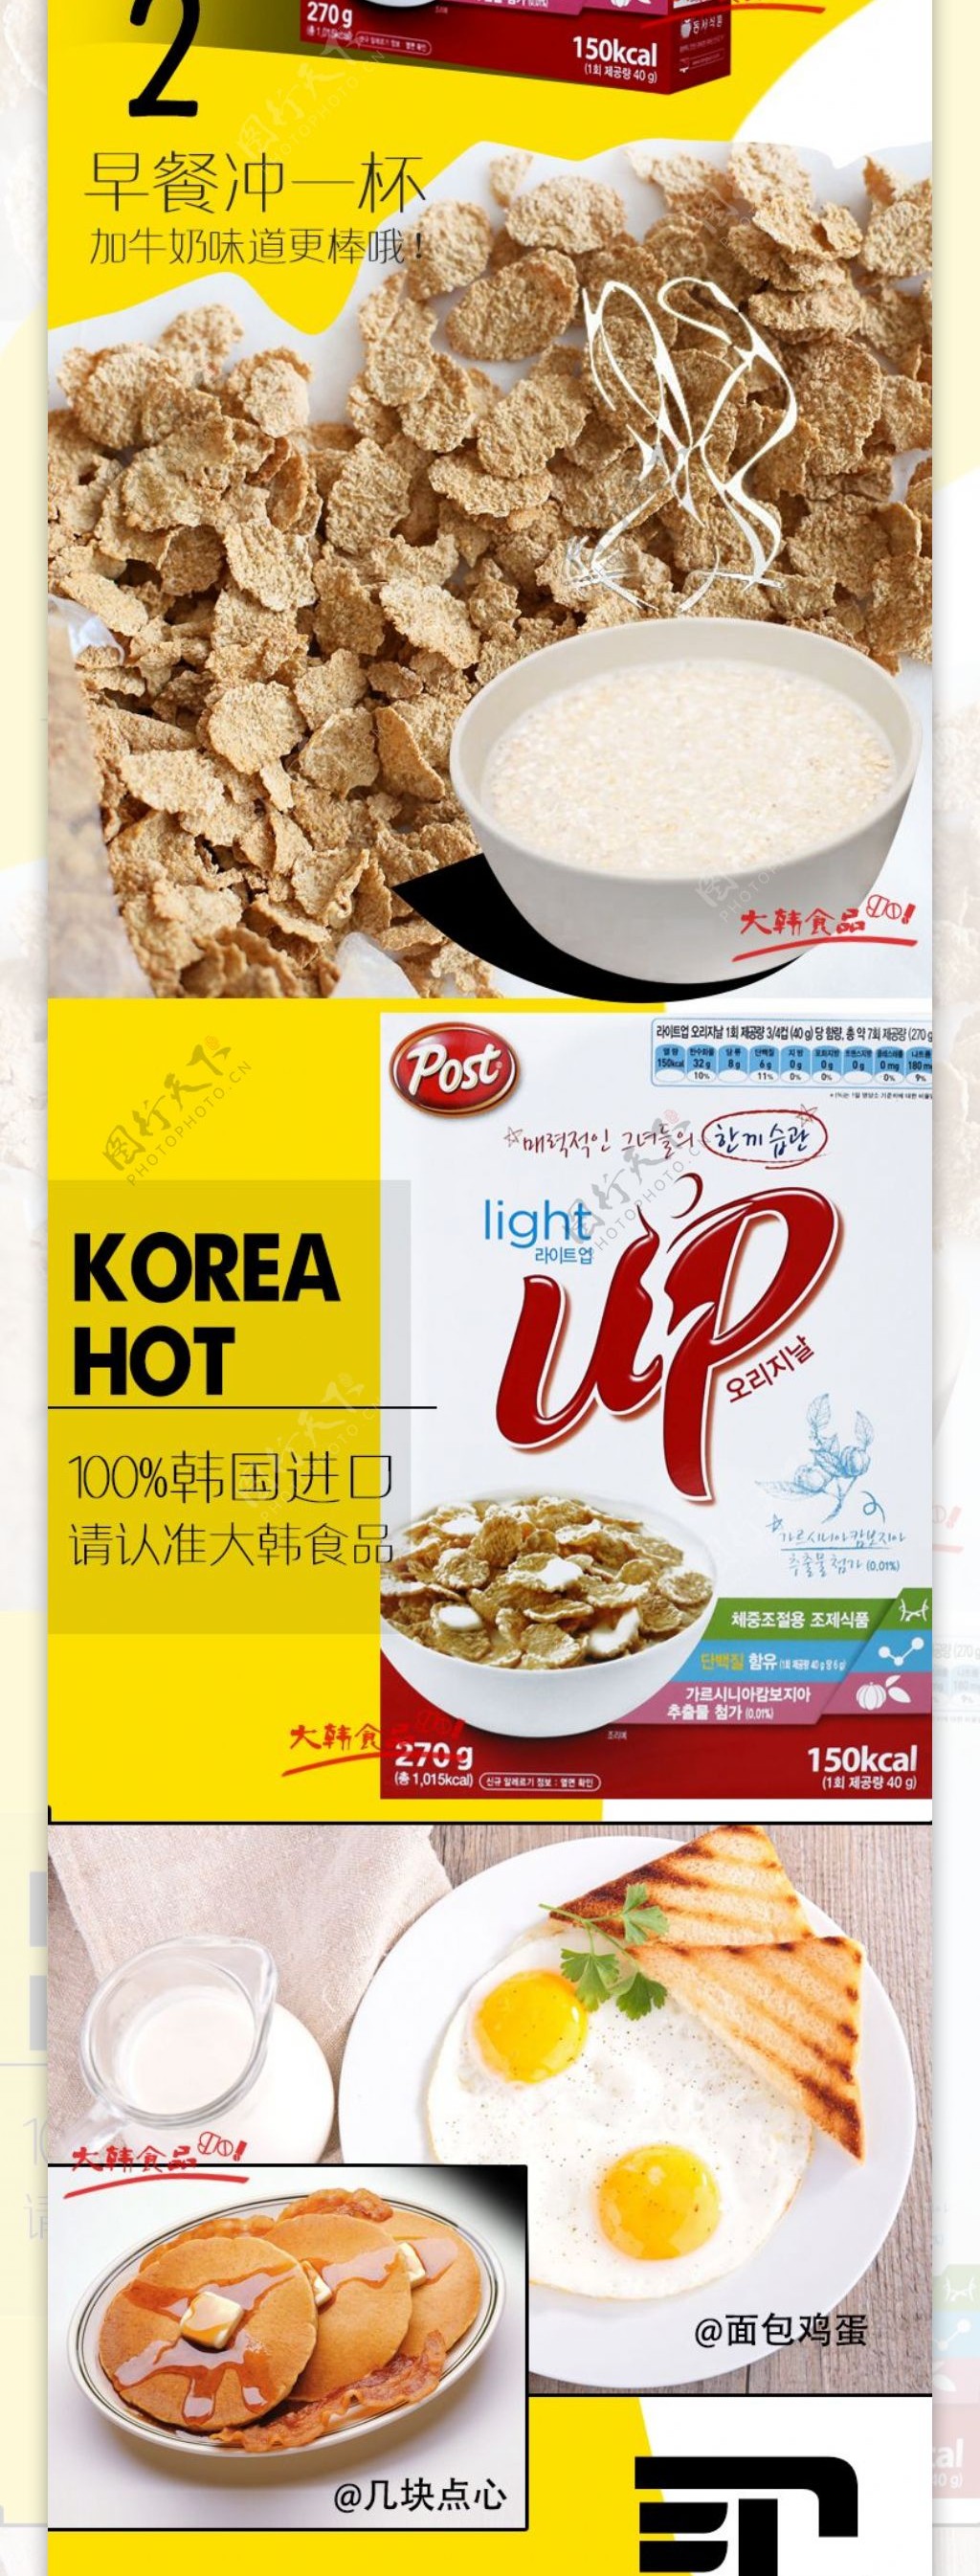 韩国食品详情页